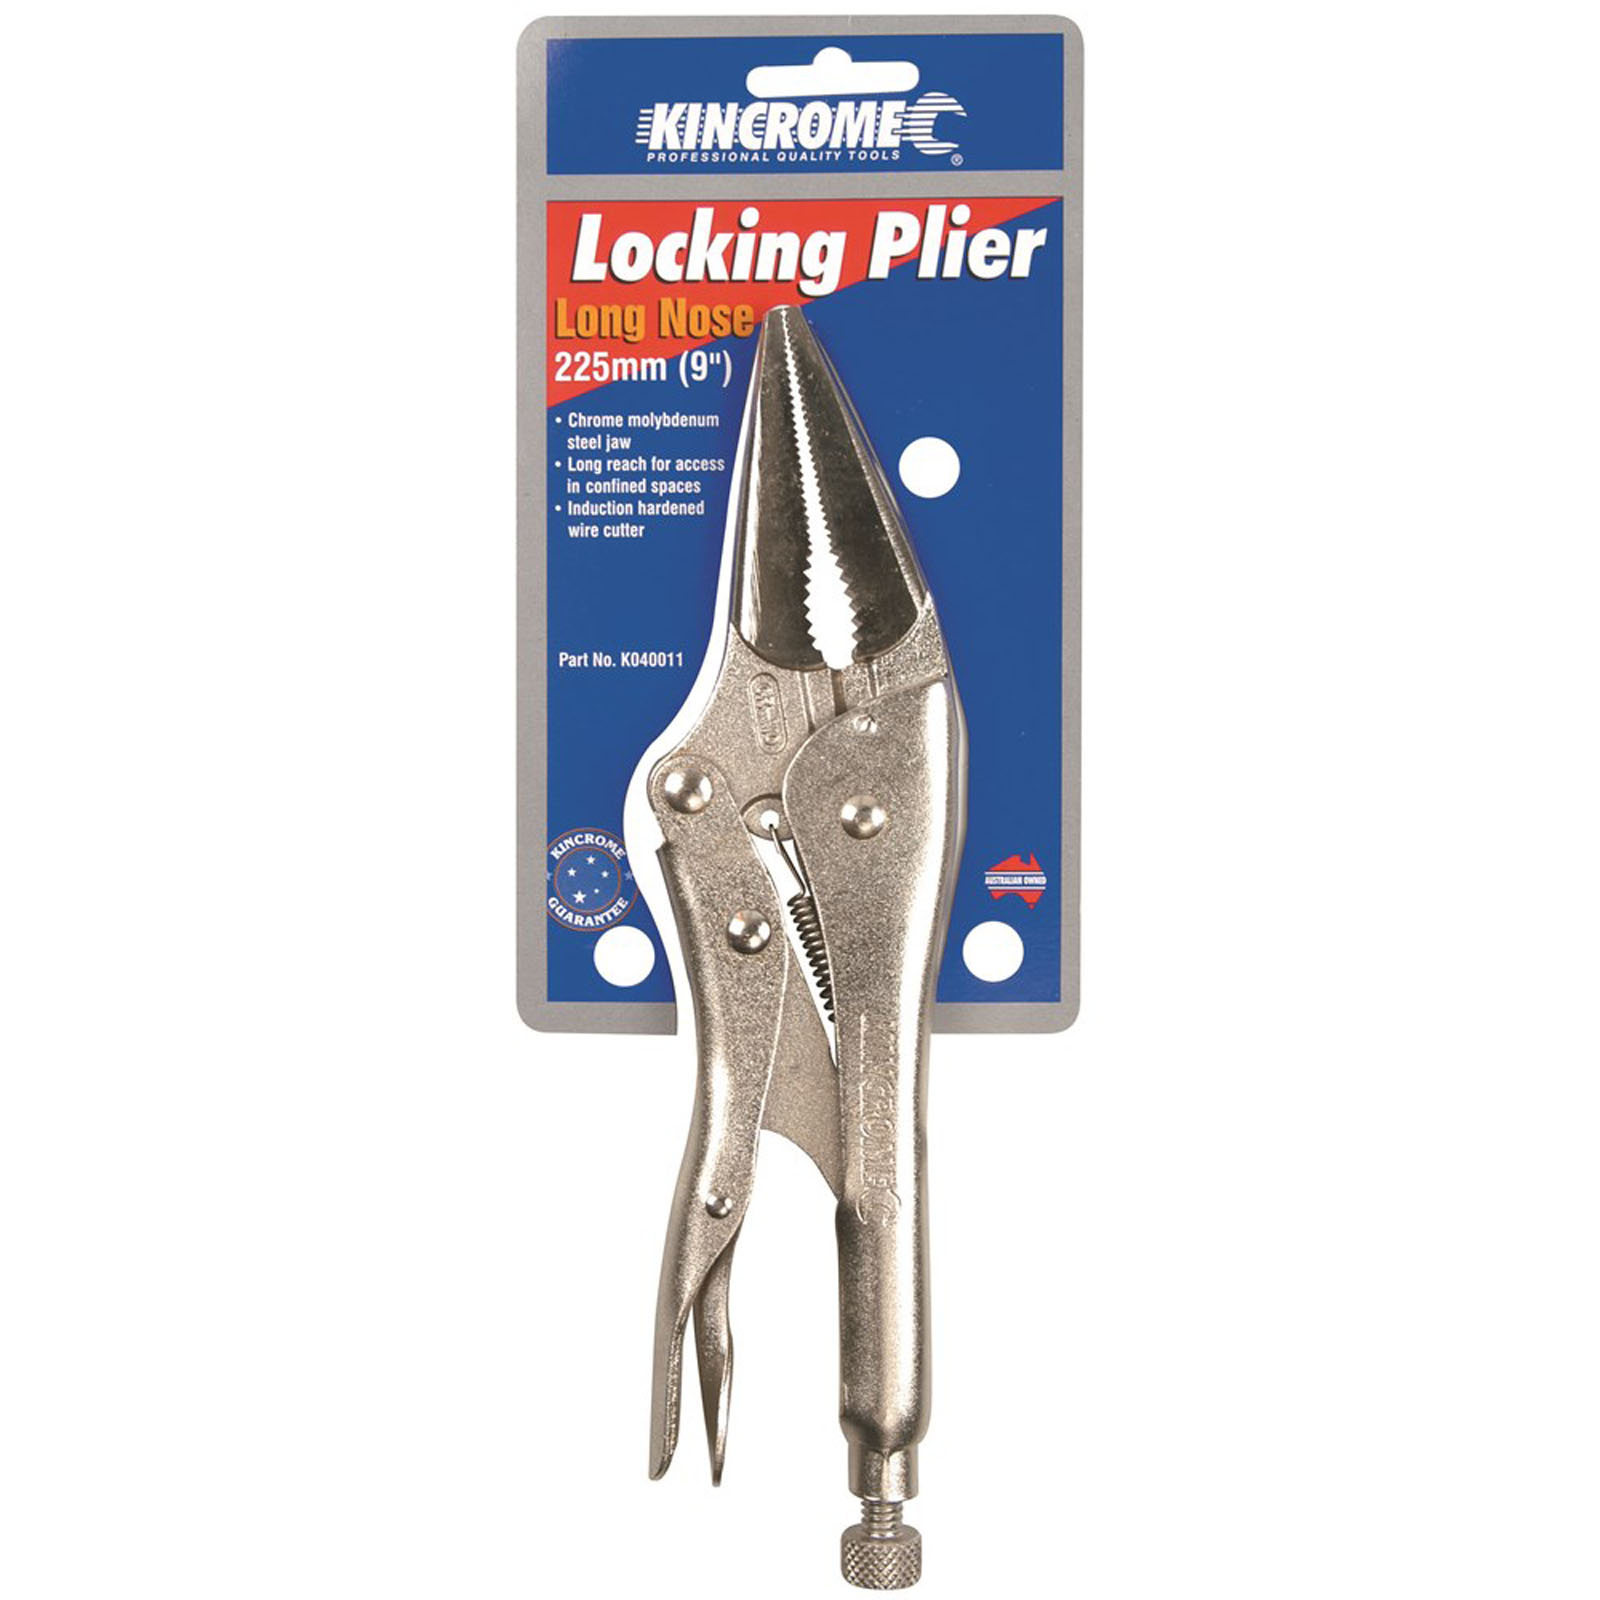 Locking Pliers Long Nose 225mm (9